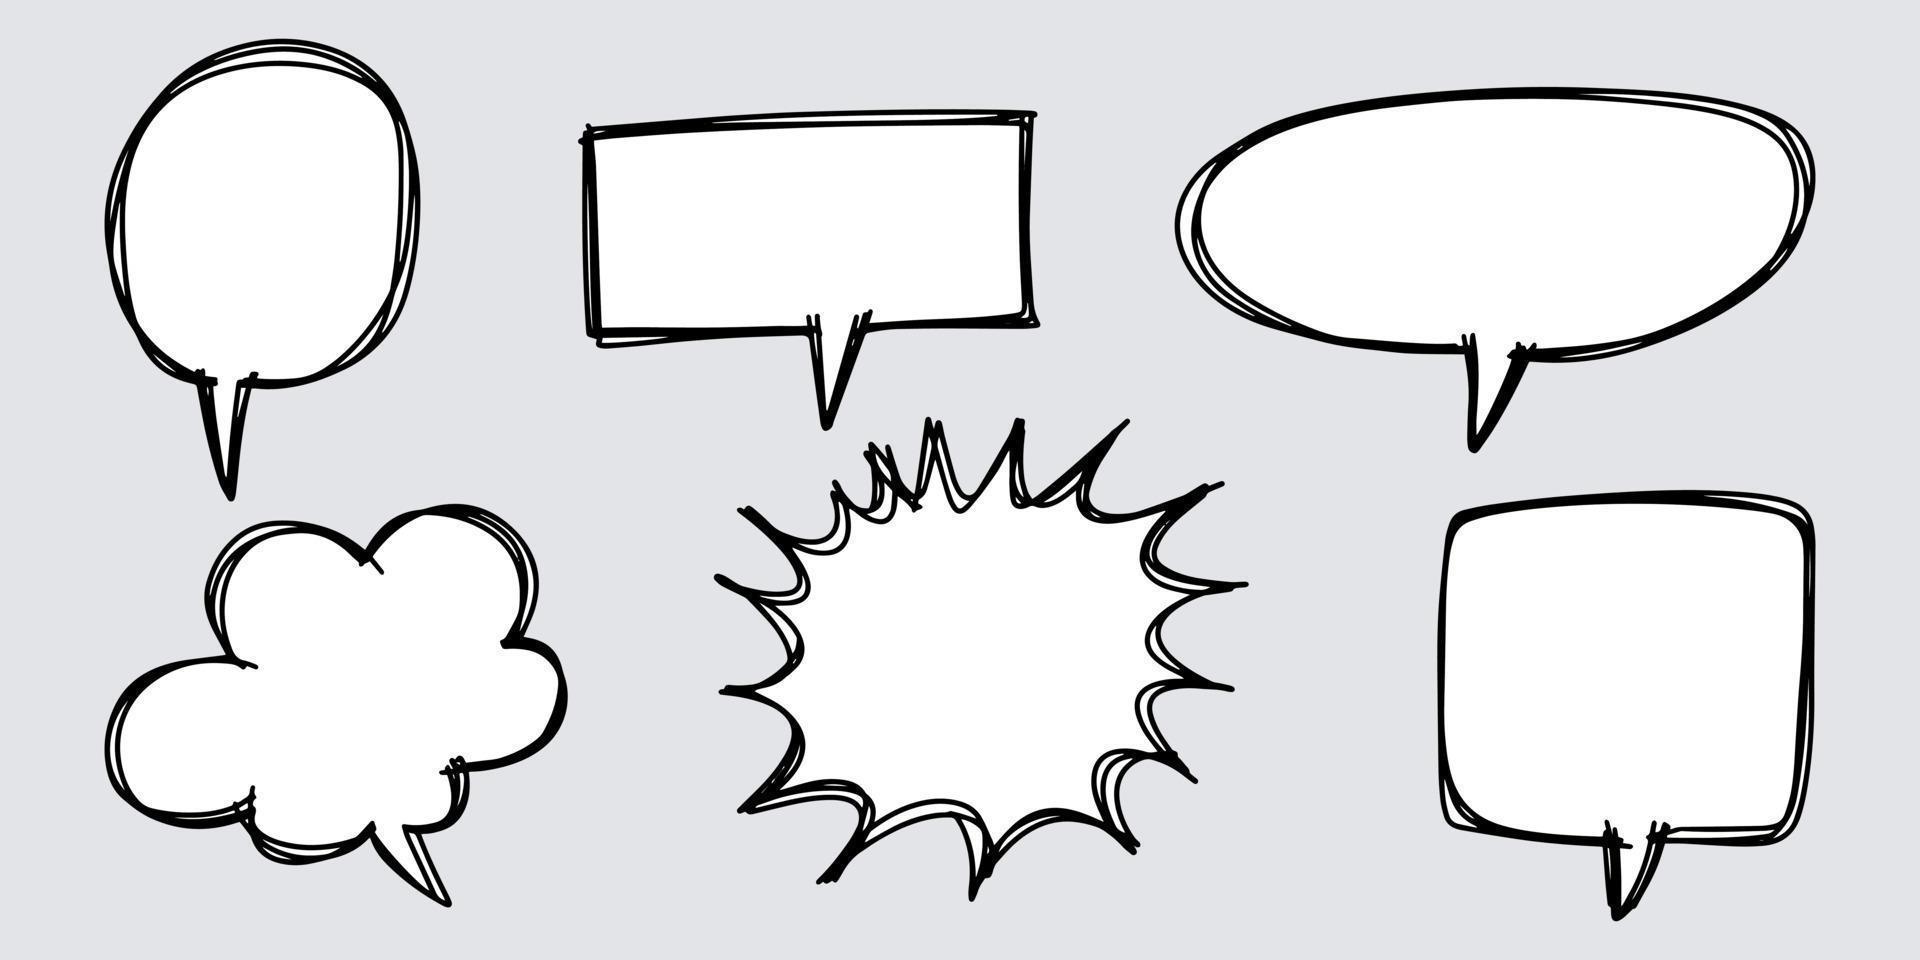 estilo de esboço doodle de ilustração desenhada à mão de bolhas do discurso. para o projeto de conceito. vetor